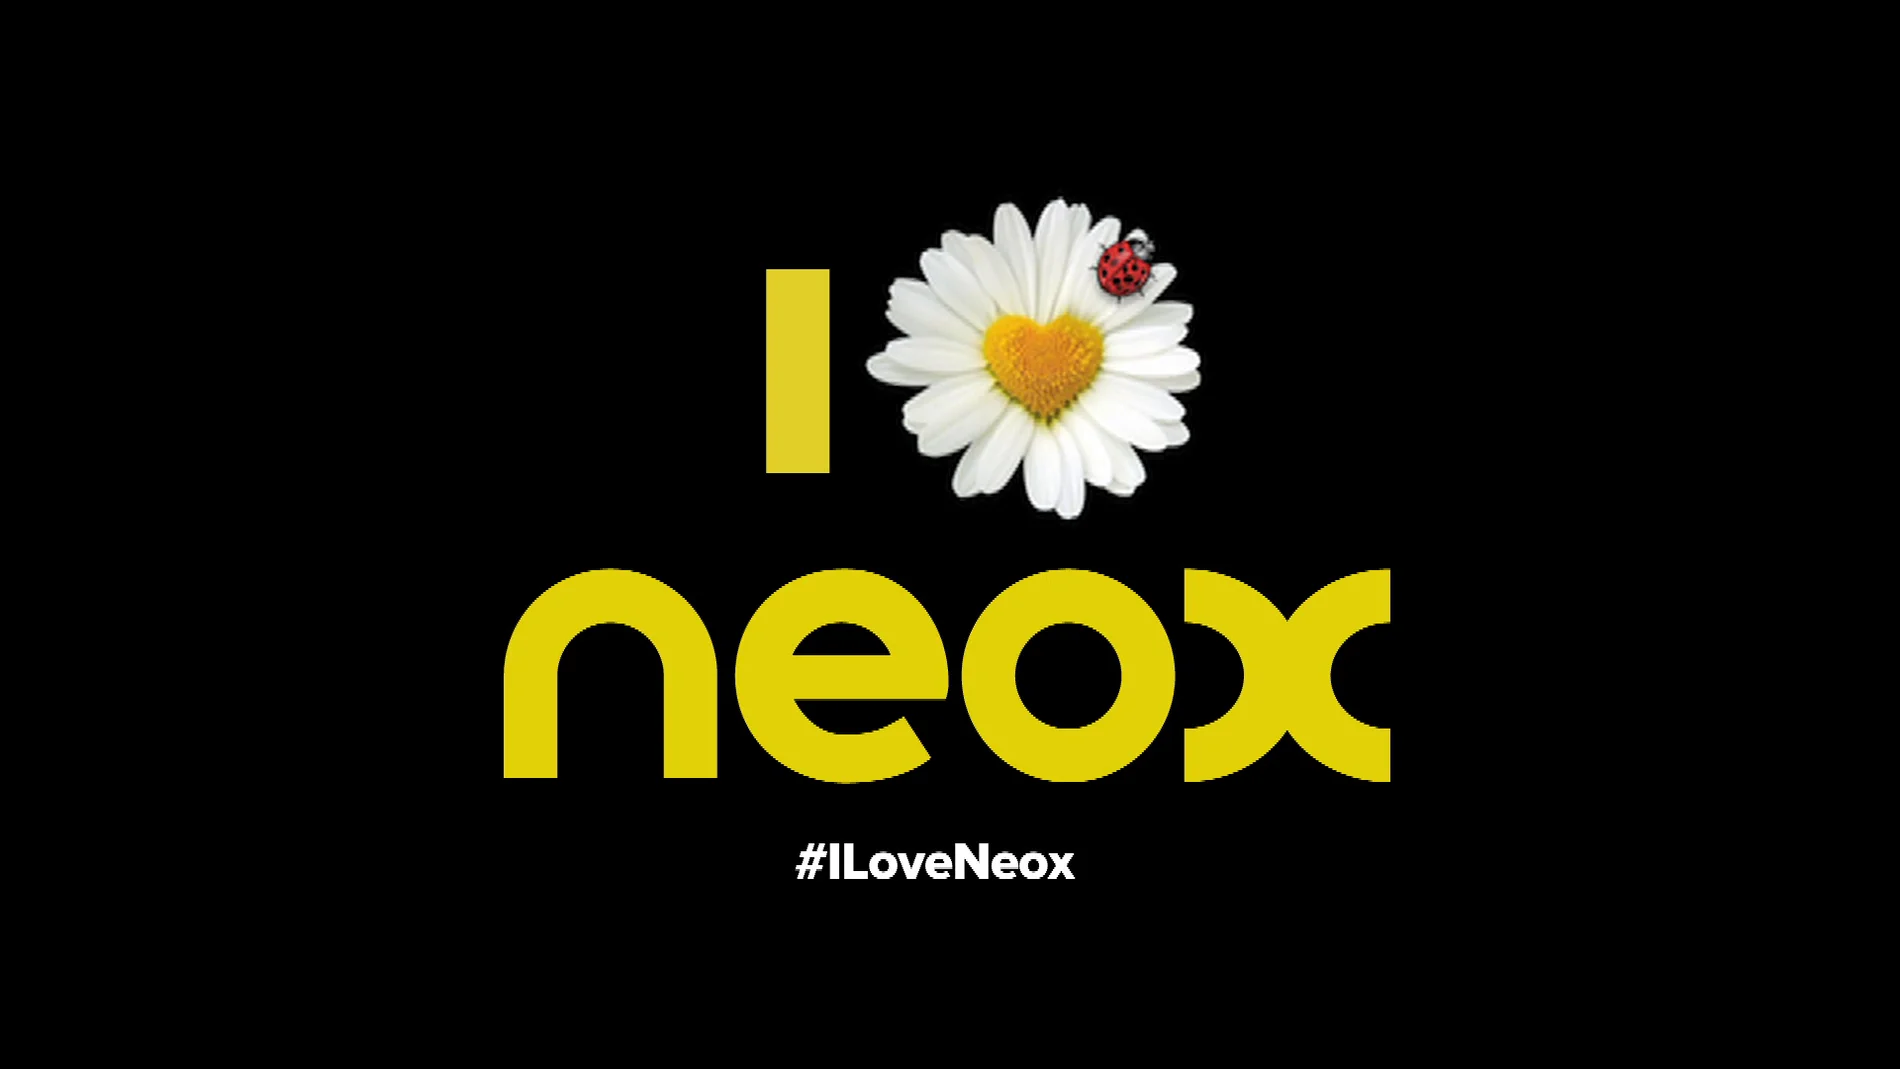 Neox se consolida como canal líder entre los jóvenes en el mes de abril 